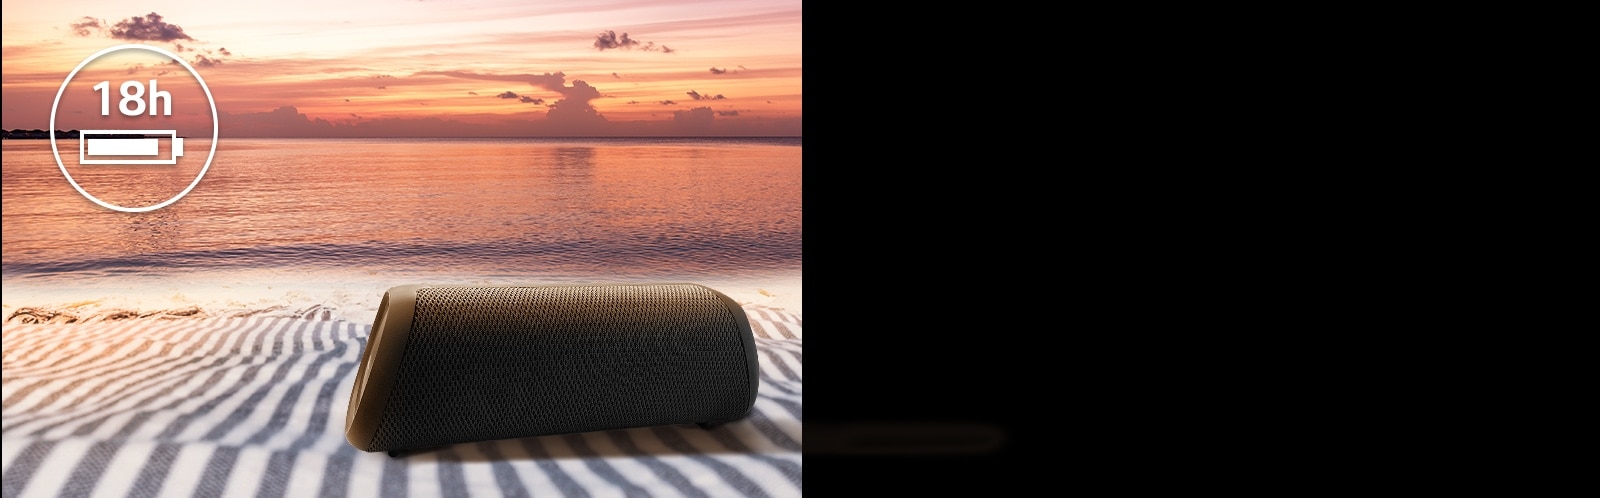 El altavoz se coloca sobre una toalla de playa. Frente al altavoz, se muestra la puesta de sol en la playa para ilustrar que este altavoz se puede reproducir hasta 18 horas.